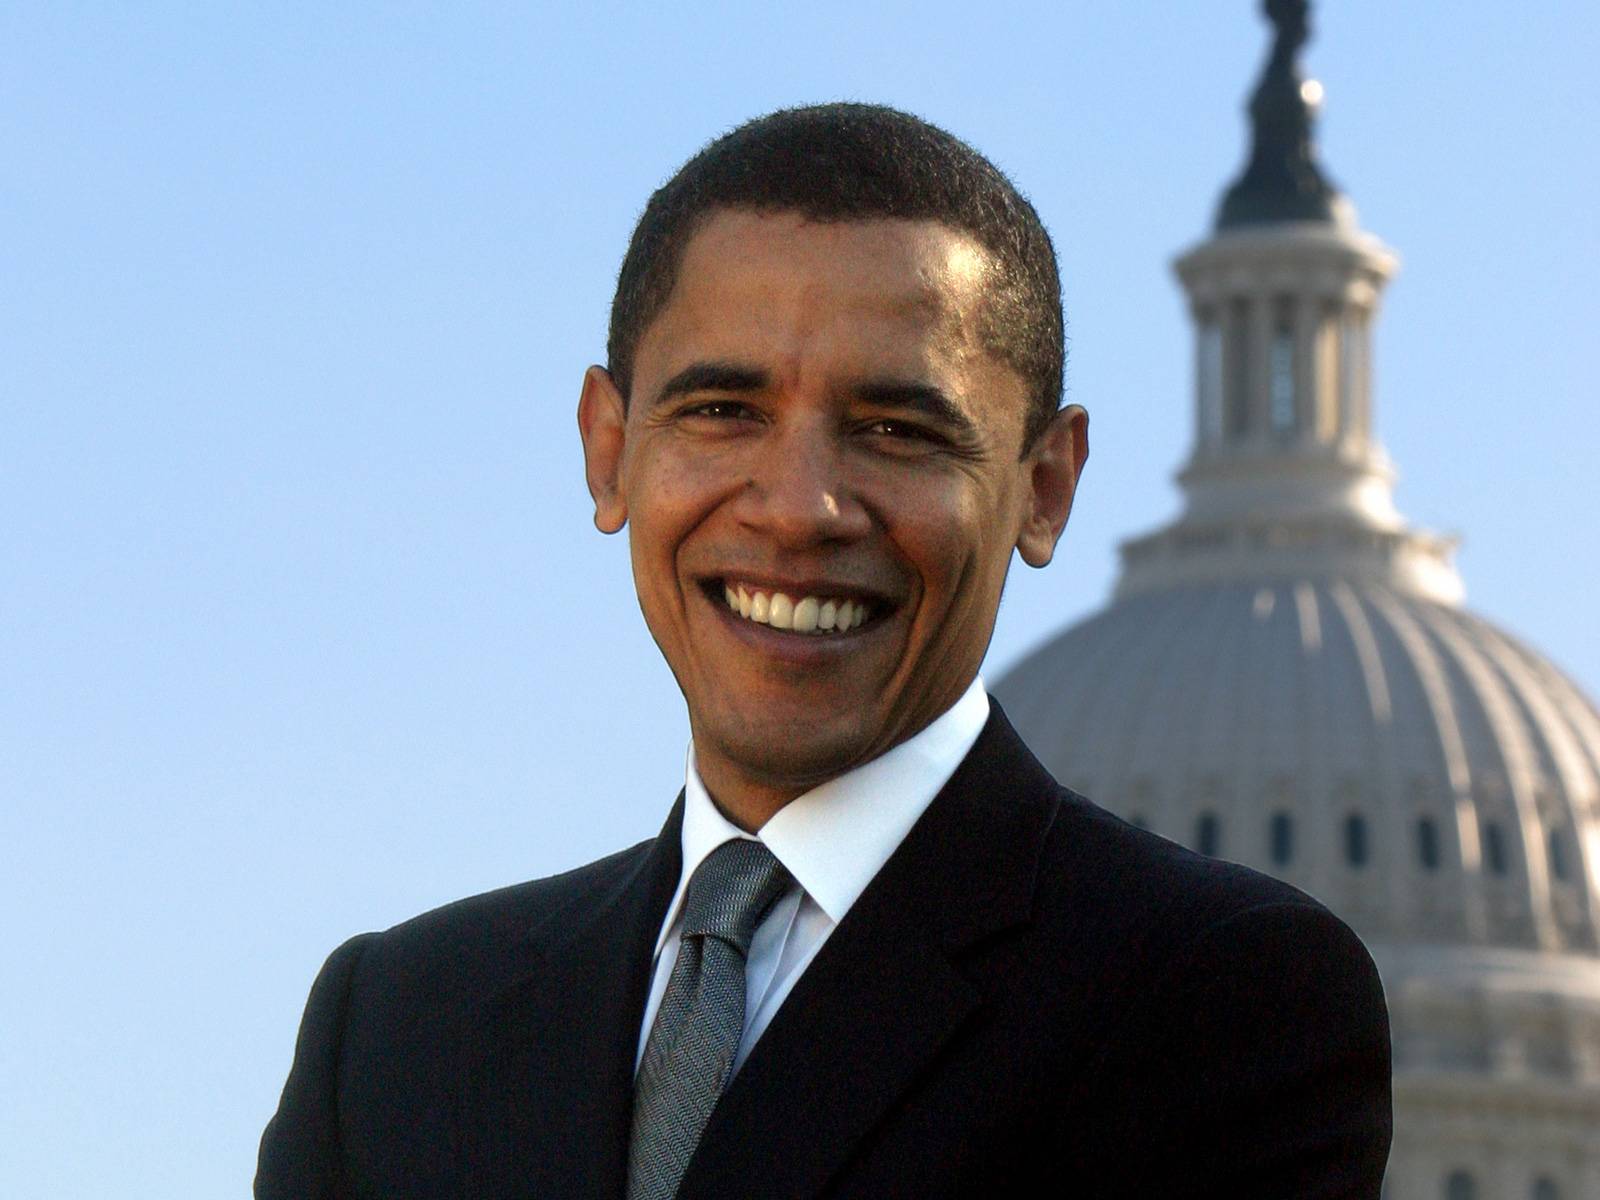 Barack Obama smile wallpaper - HDwallpaper4U.com